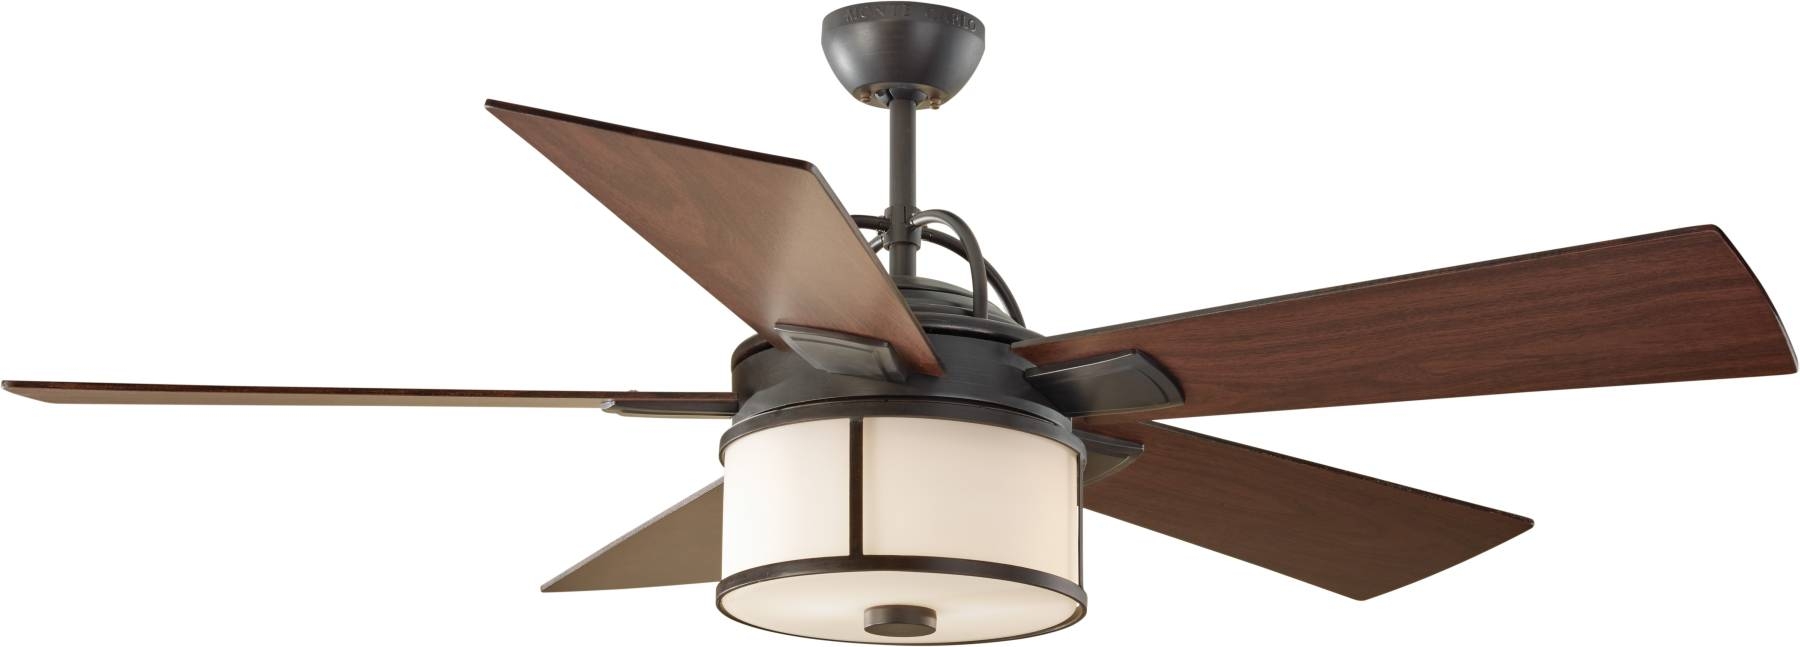 Dark Wood Ceiling Fan With Light